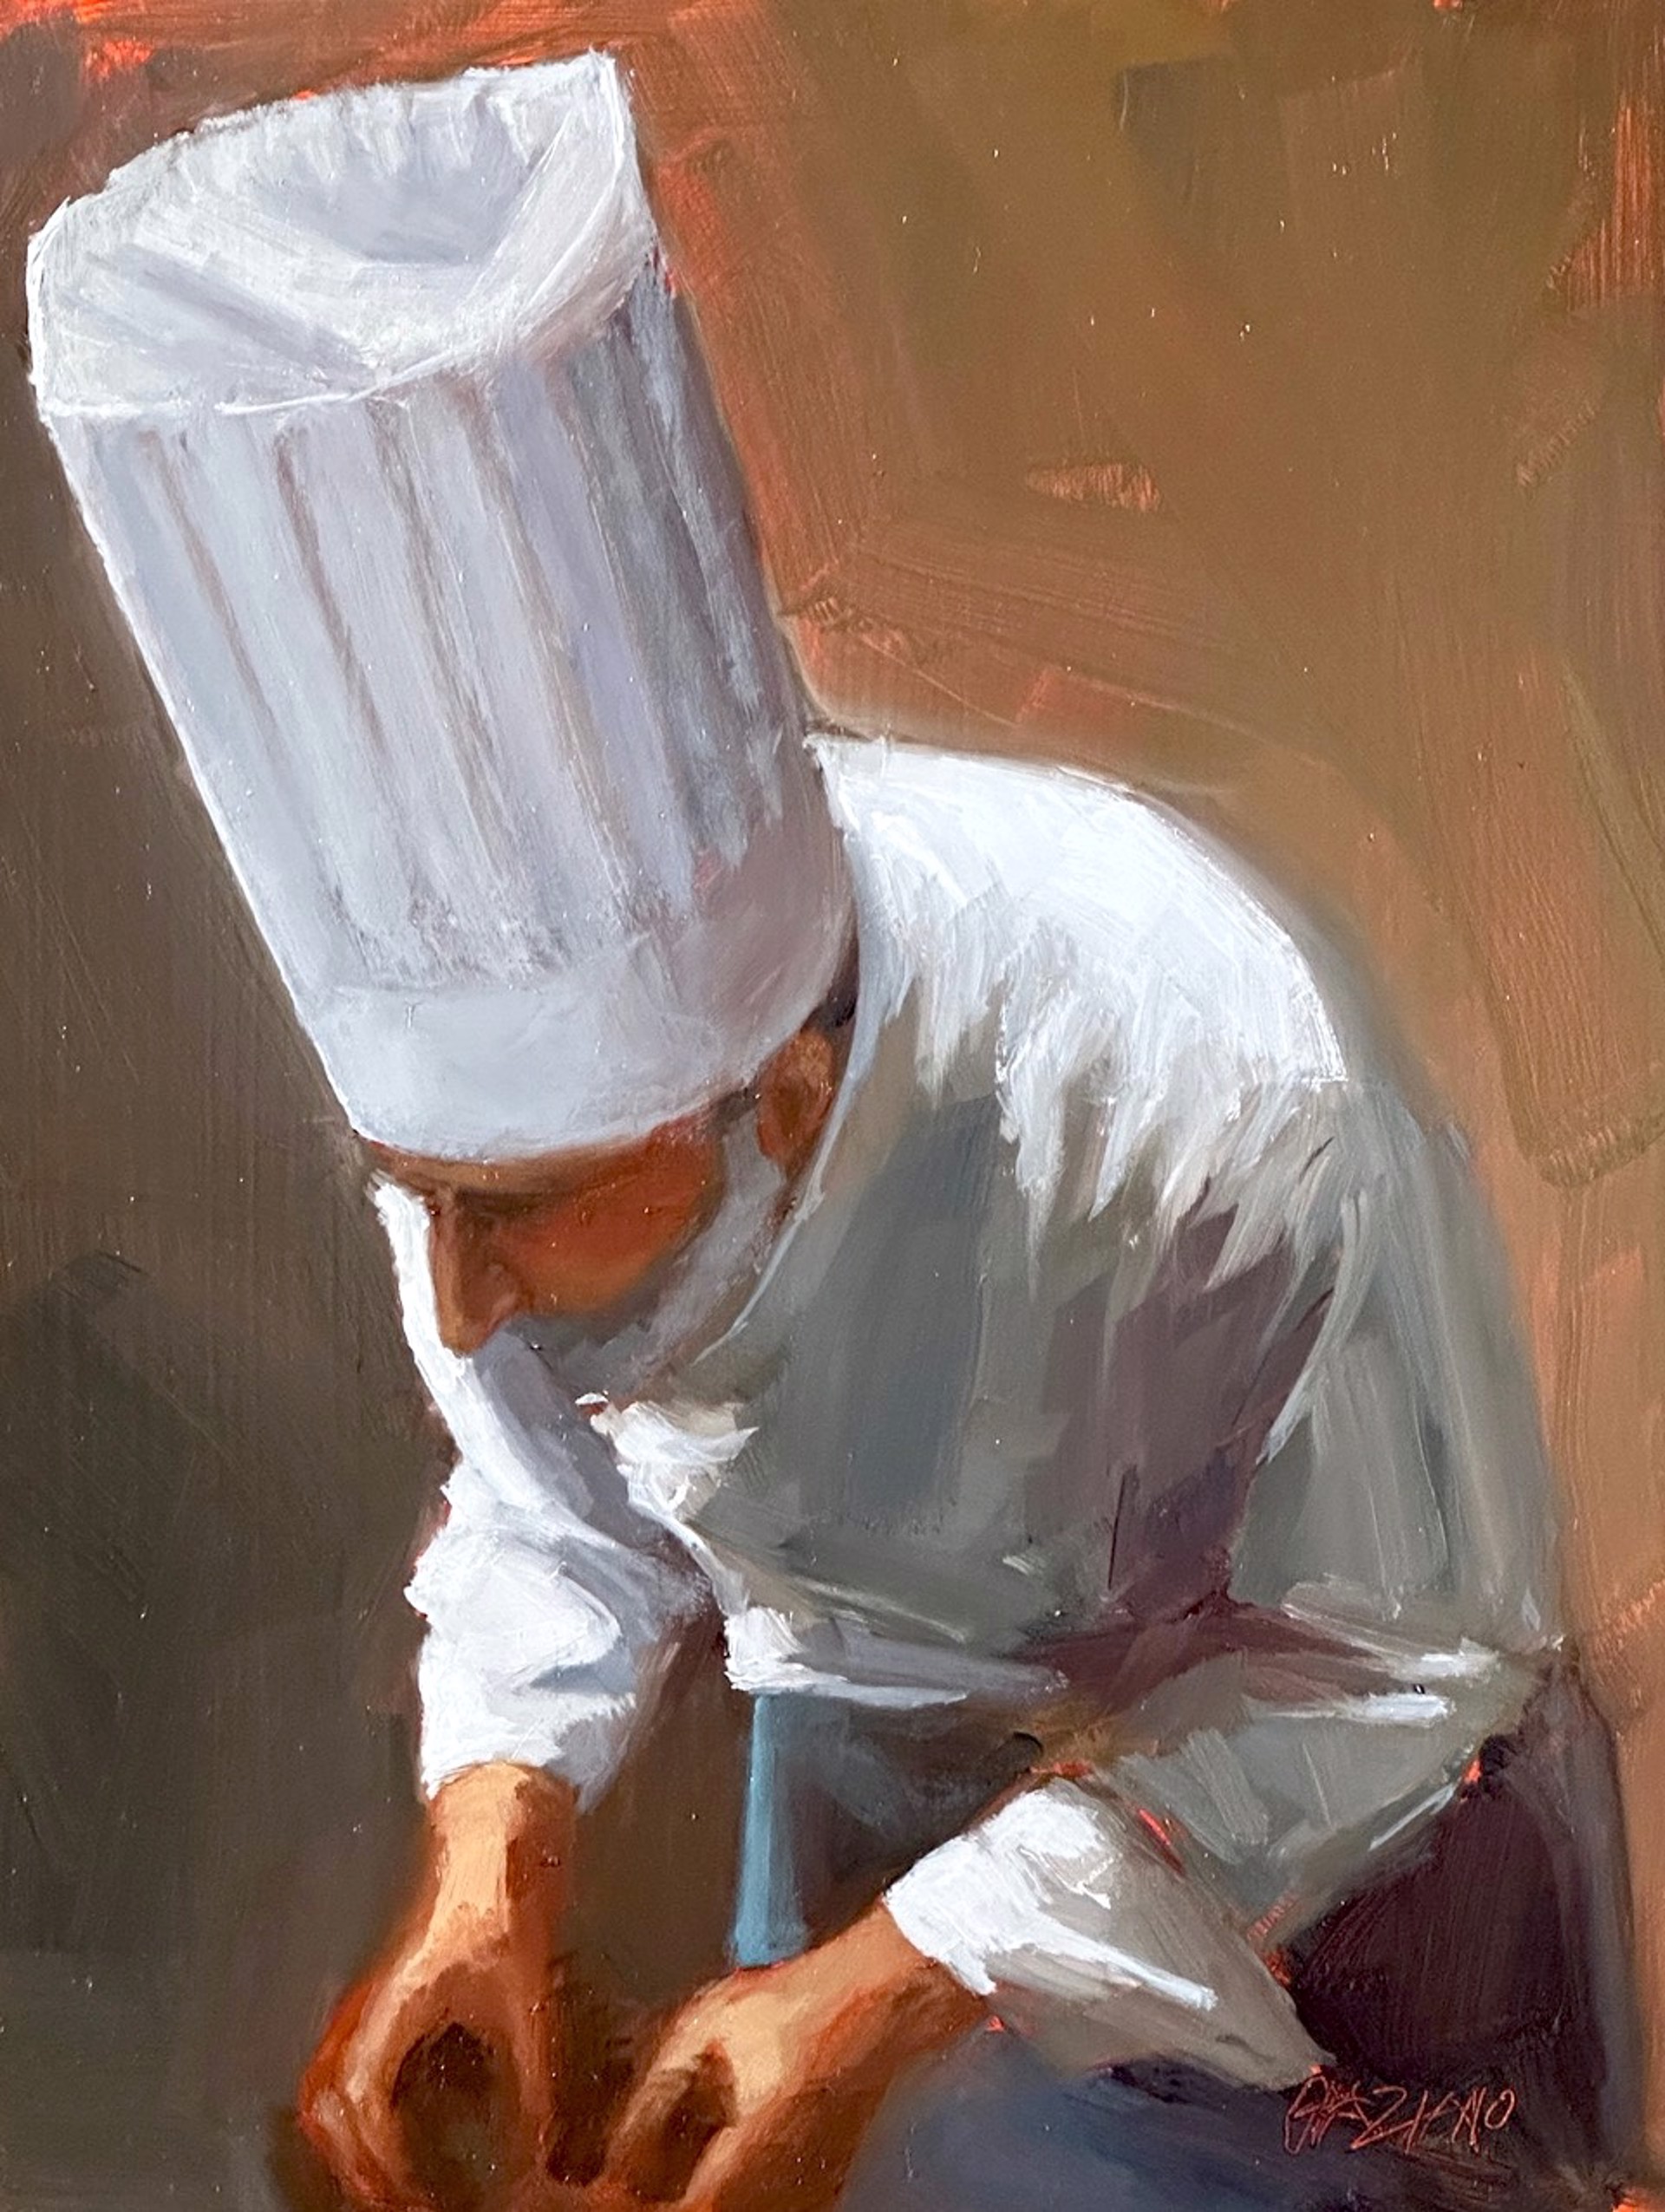 Master Chef by Dan Graziano